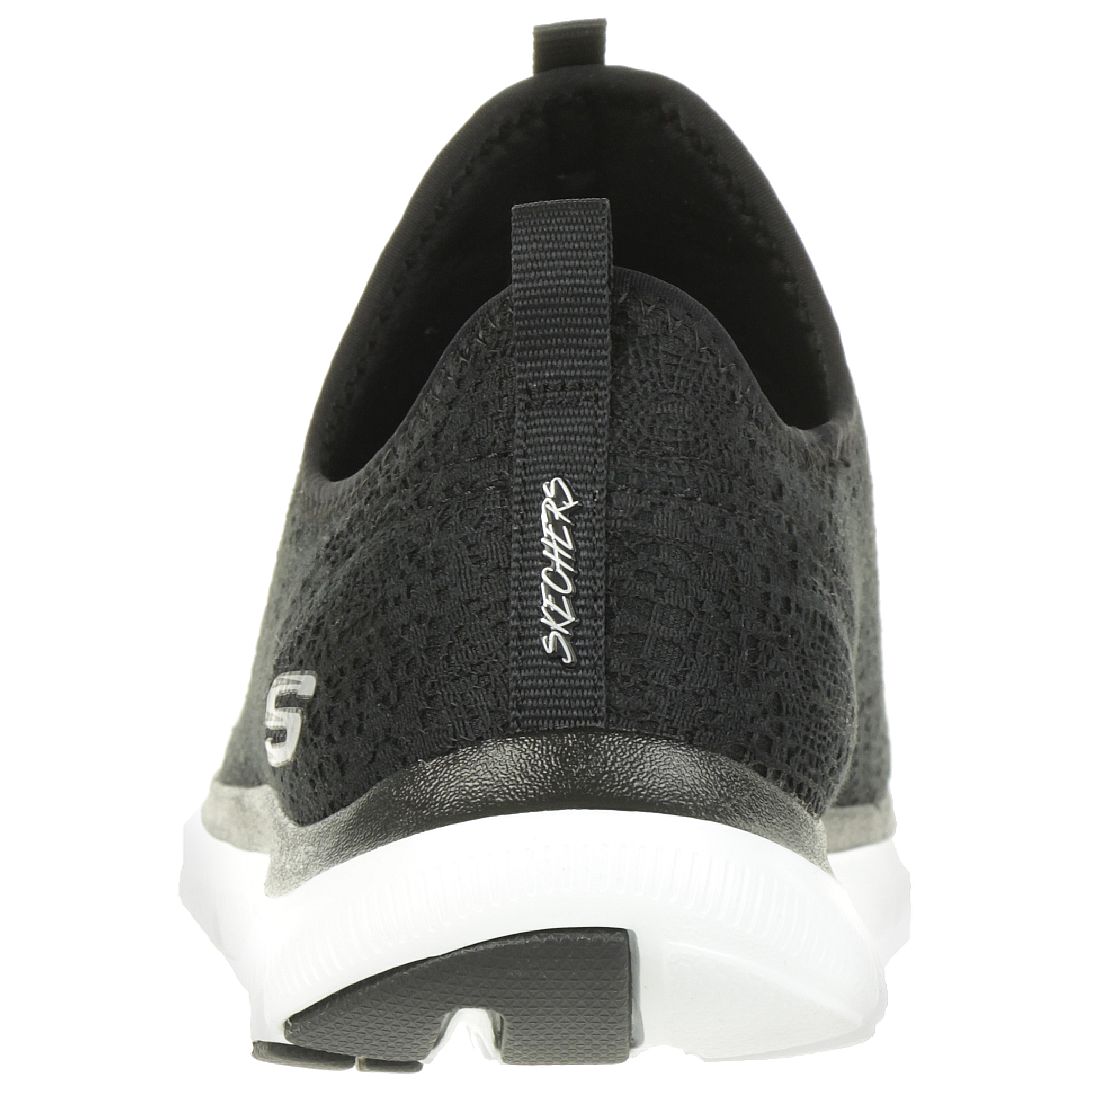 Skechers Flex Appeal 2.0 CLEAR CUT Damen Sneaker Slip on Memory Foam schwarz 12907